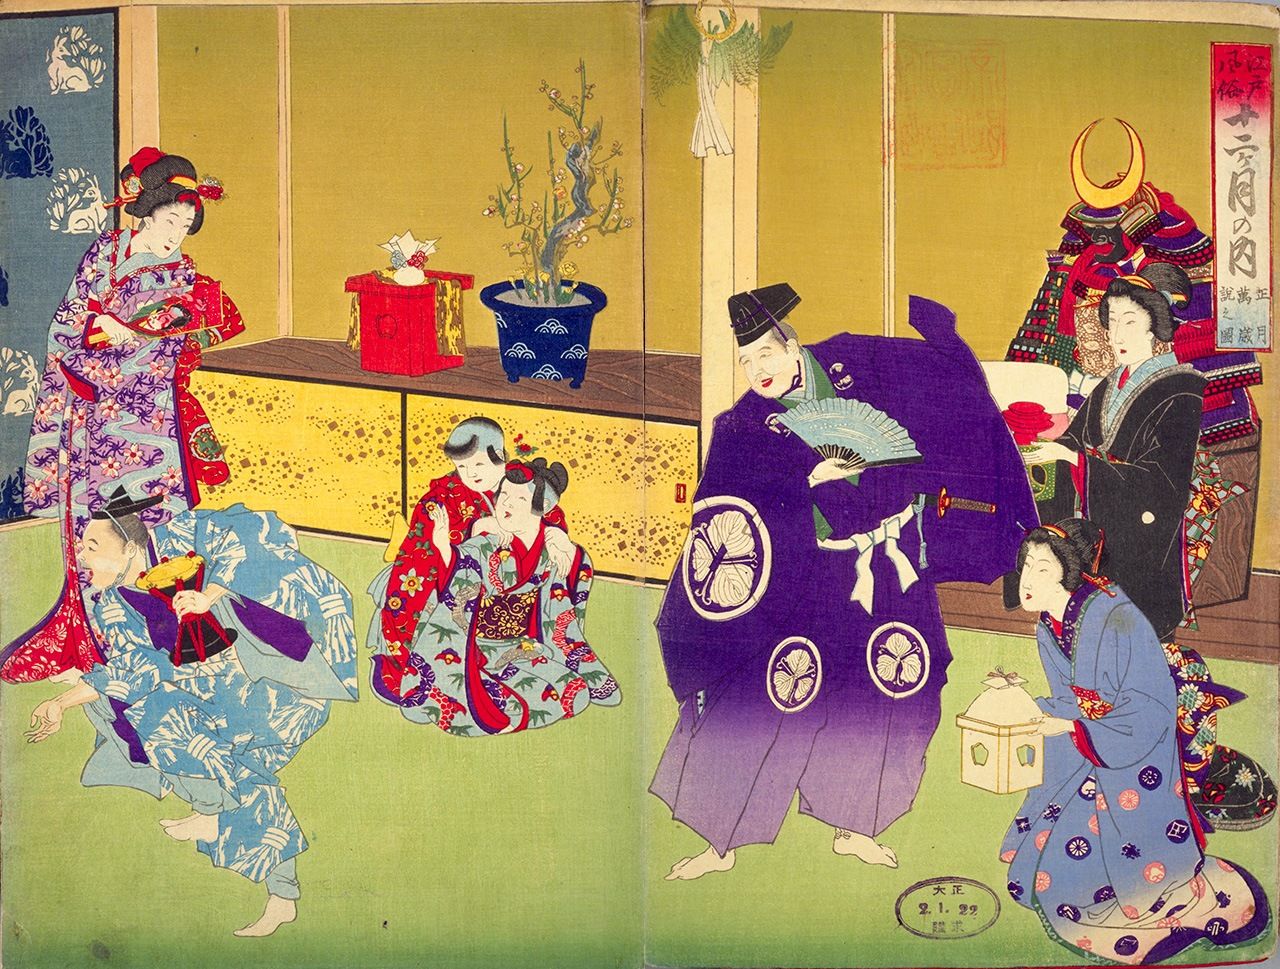 À en juger par la tenue des femmes et des enfants, il semble qu’un duo de mikawa manzai soit en train de se produire dans une résidence de samouraïs. Le tayû est à droite et le saizô à gauche. « Edo au fil du calendrier, les coutumes de janvier, scène de manzai » (Edo Fûzoku Jûnikagetsu no uchi, Shôgatsu Manzai setsu no zu, Bibliothèque nationale de la Diète).